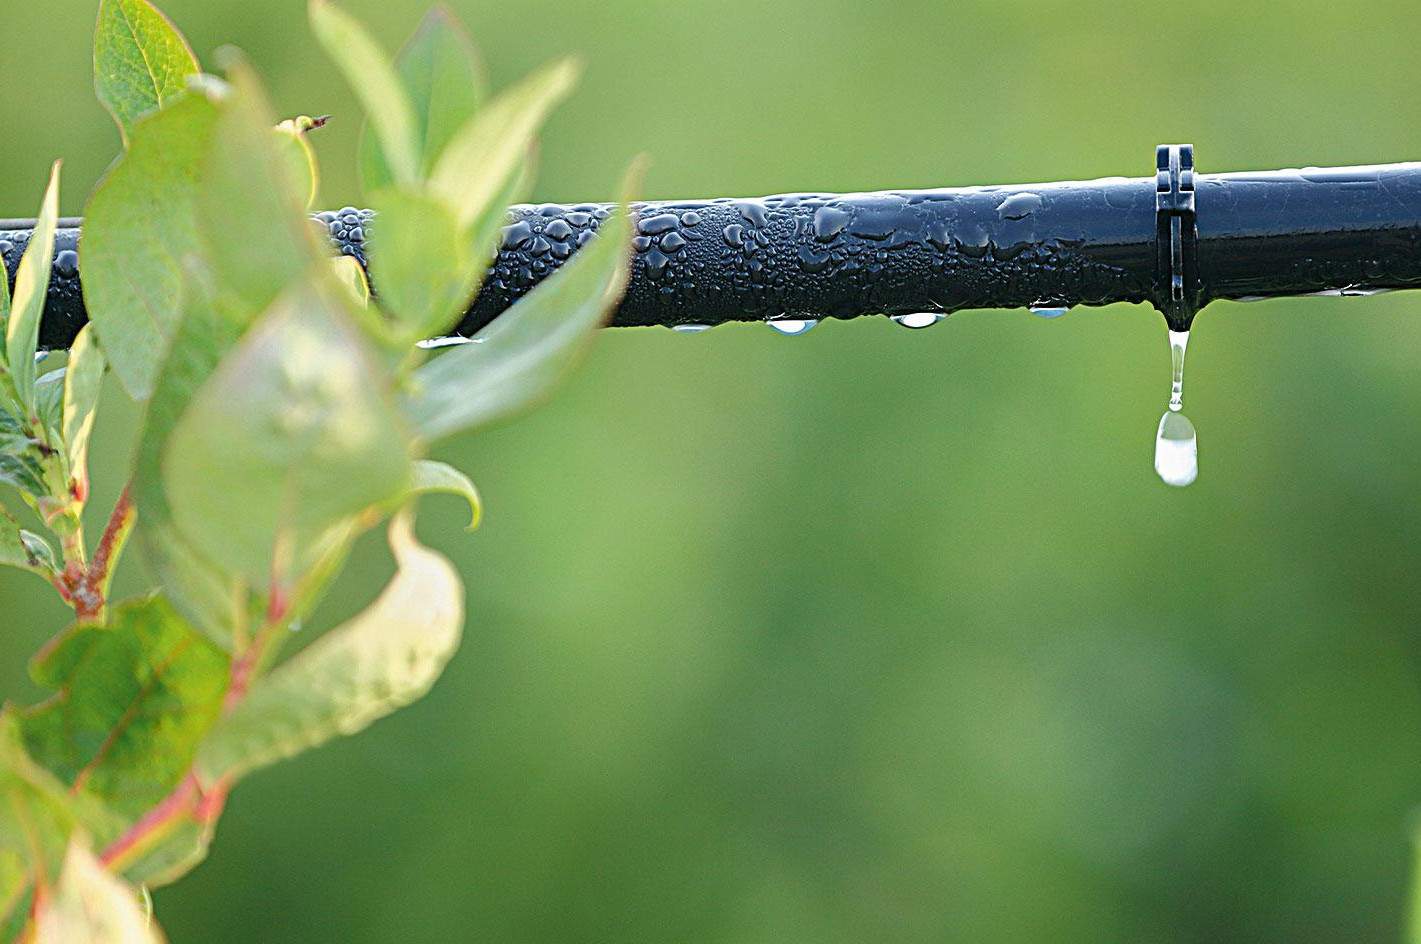 L’irrigazione deficitaria in post-raccolta è una strategia per il risparmio idrico senza ripercussioni negative